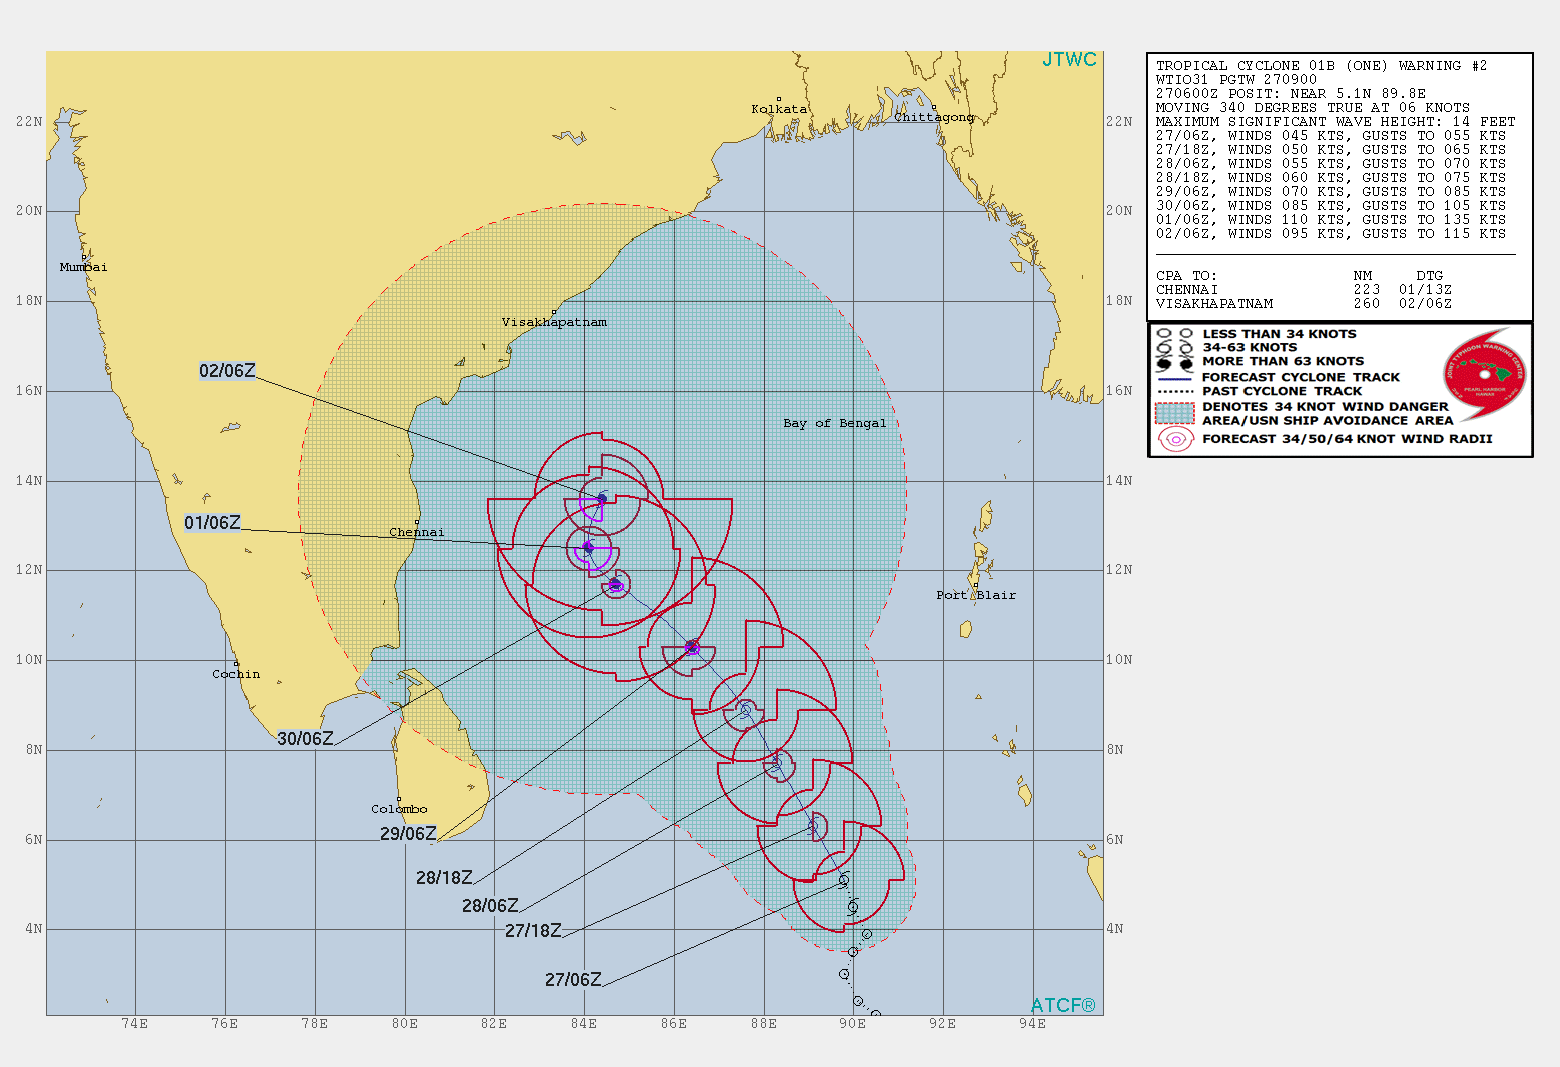 TC 01B WARN2/JTWC